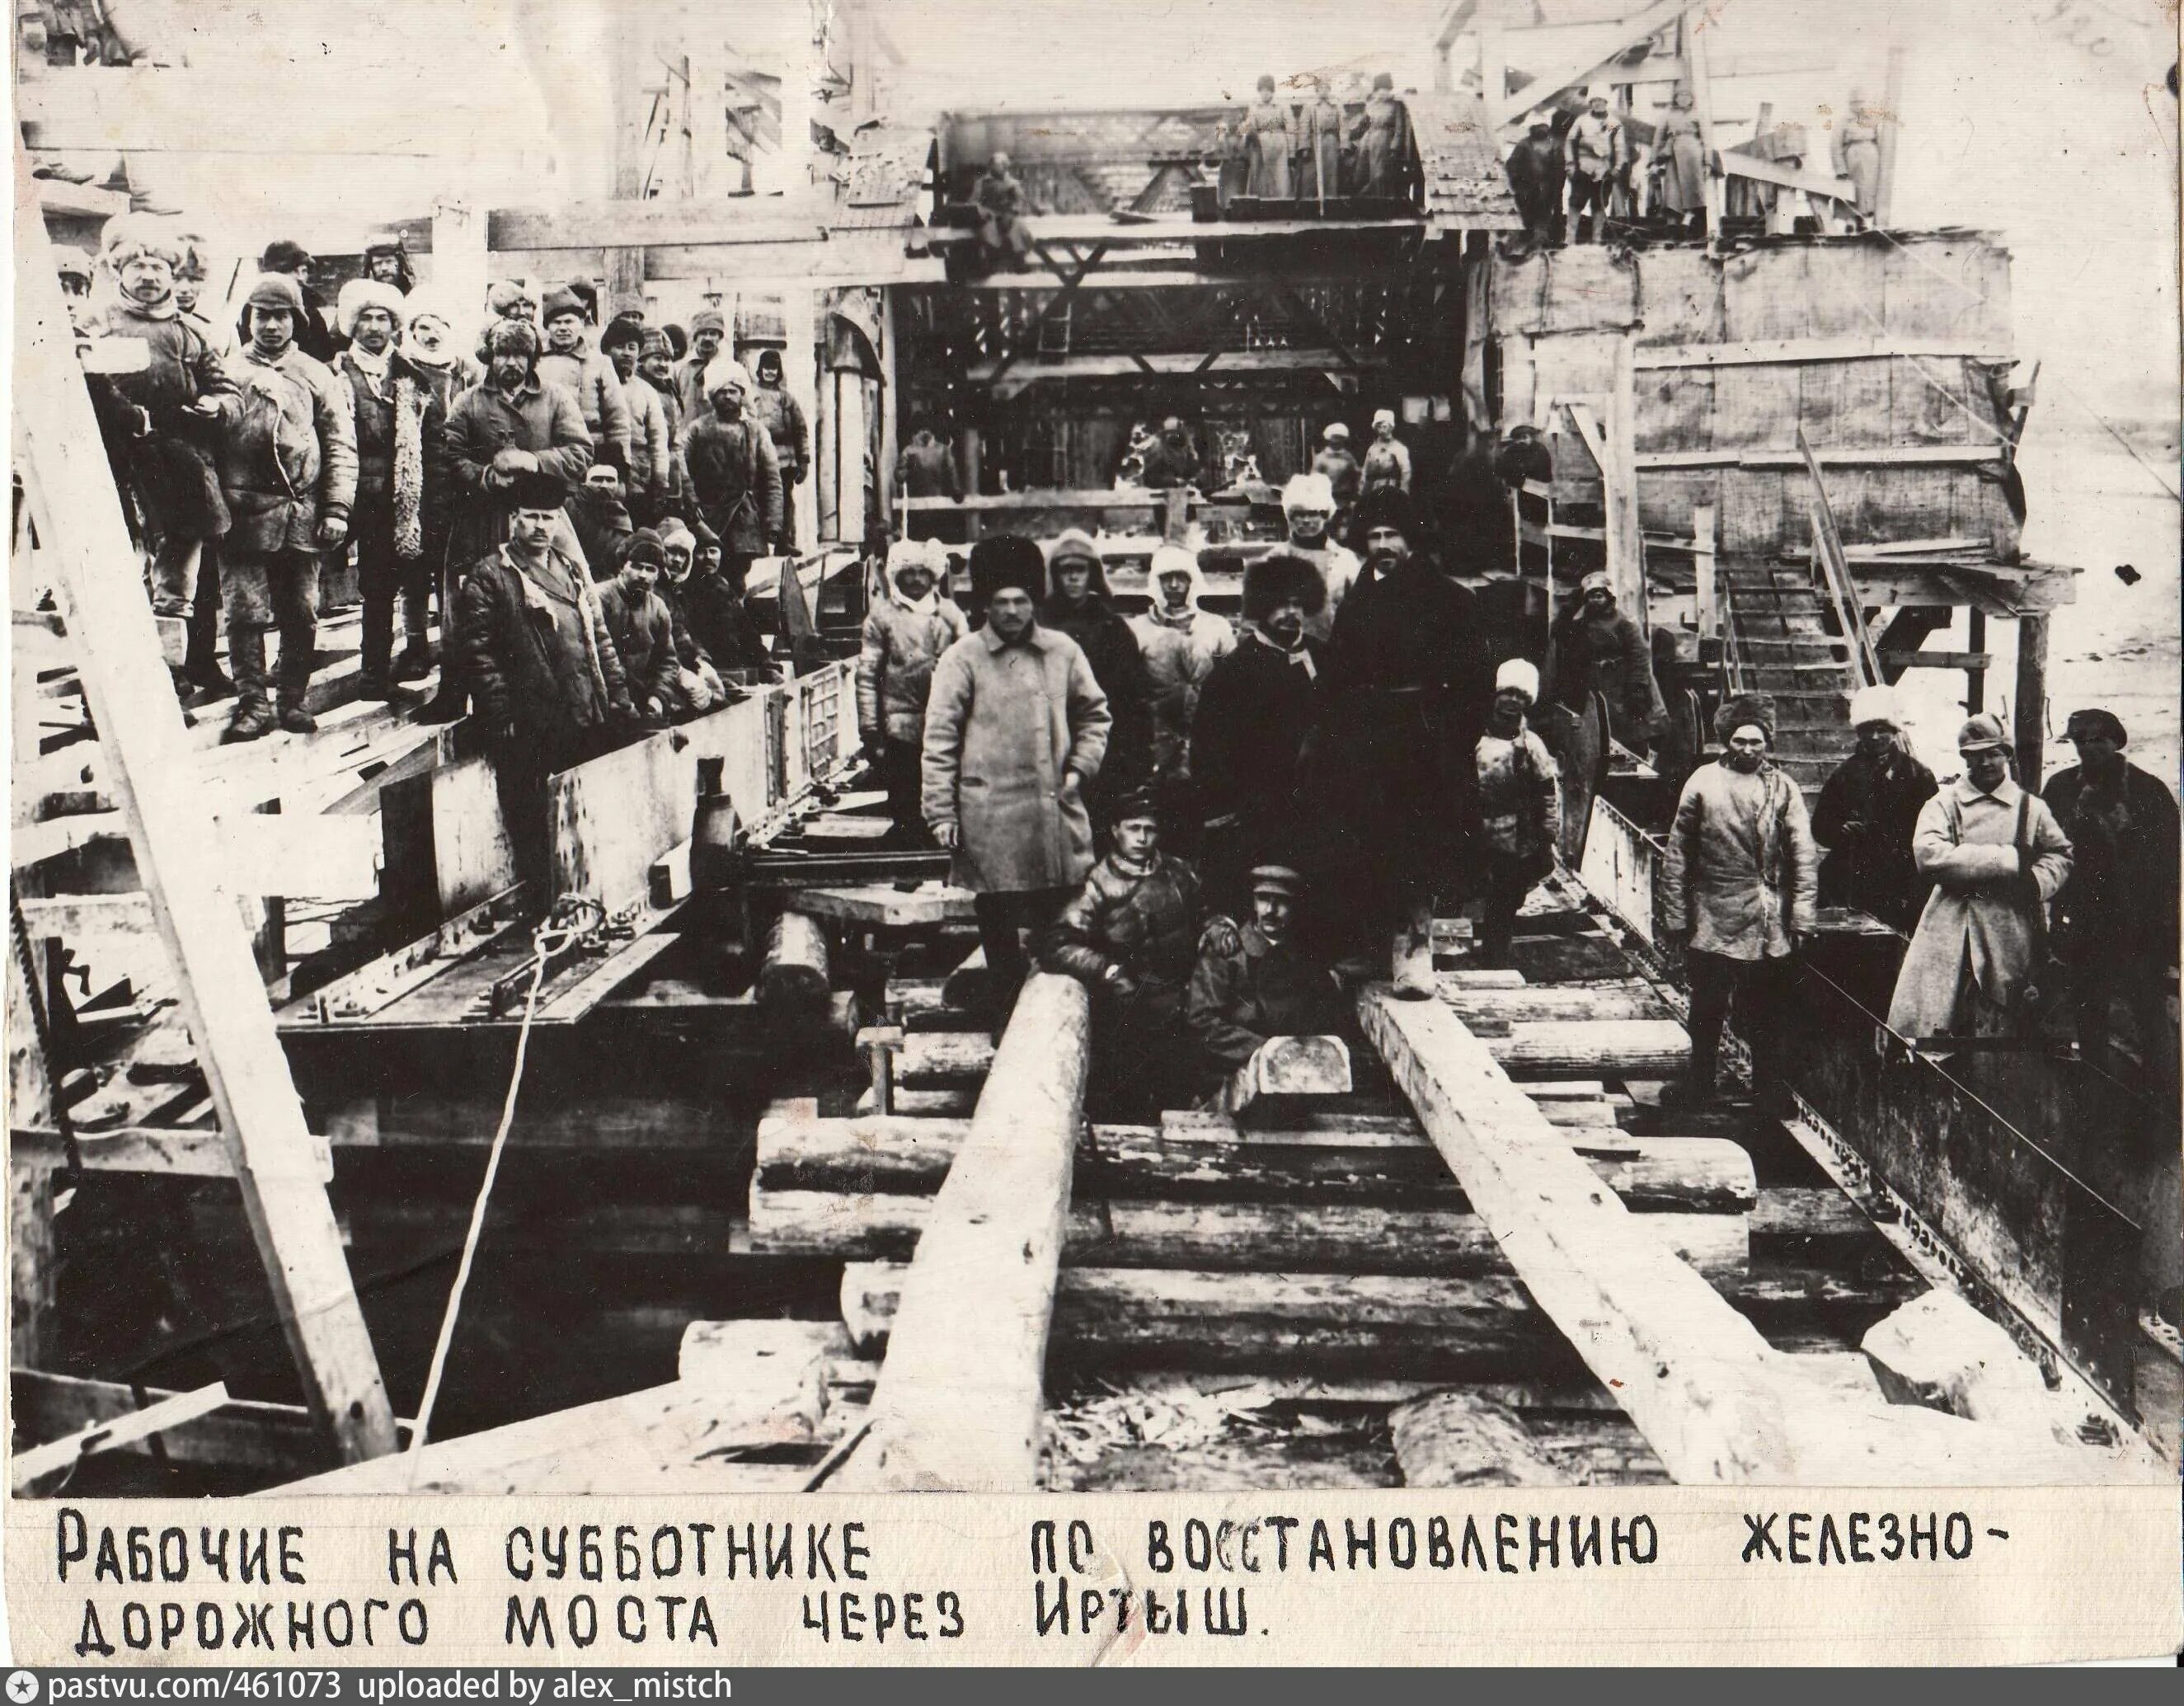 Первый Коммунистический субботник 12 апреля 1919 года. Железная дорога 1919. Омская железная дорога в годы войны. Разруха гражданской войны в России.